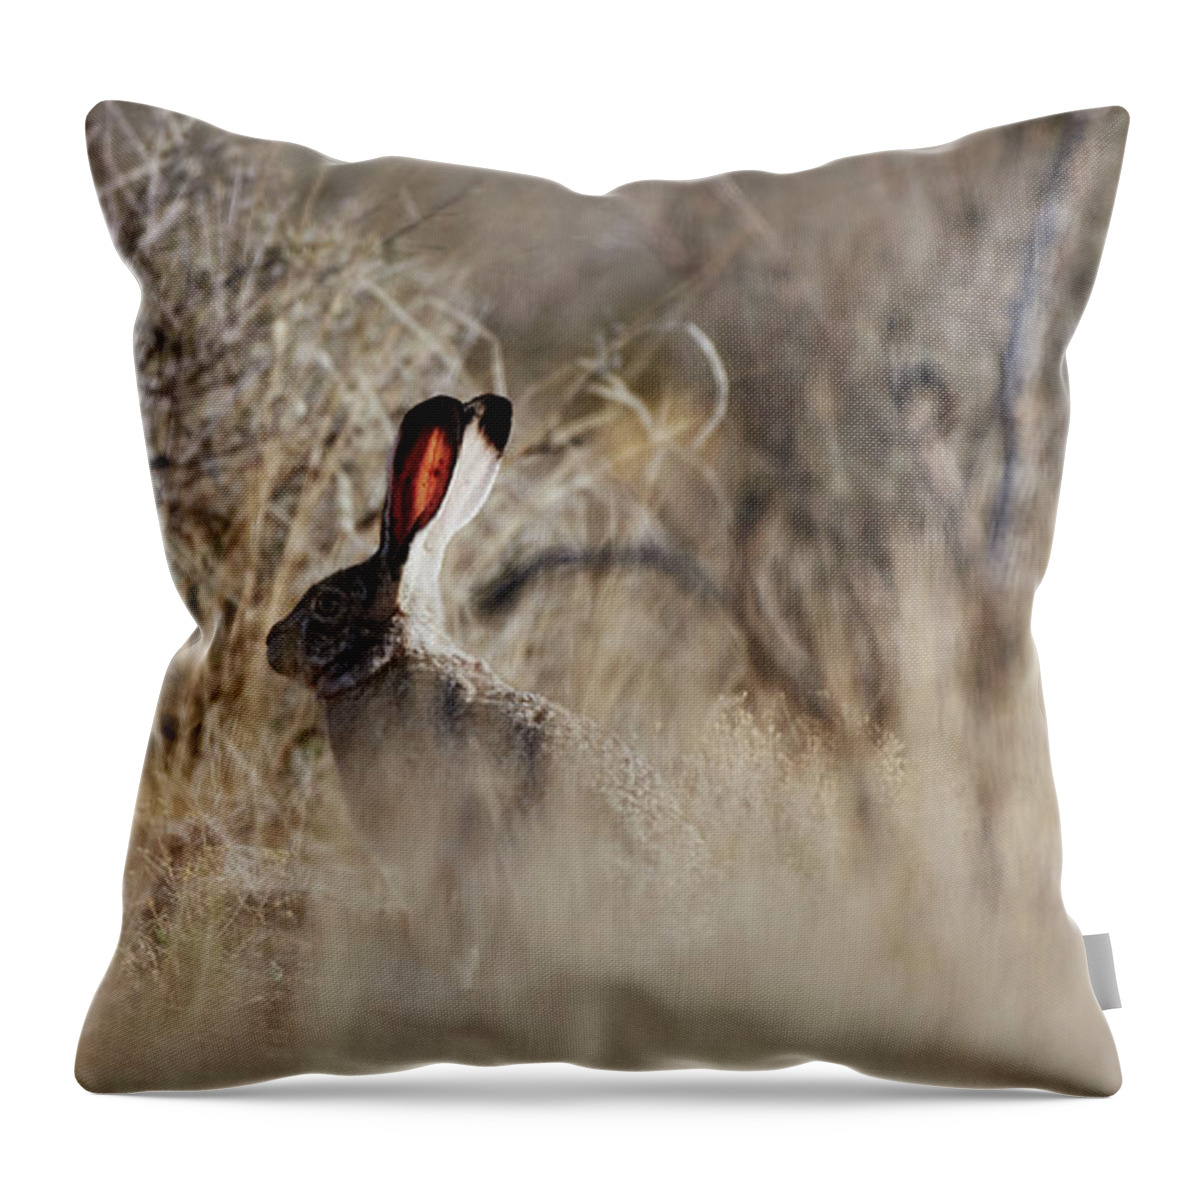 Desert Rabbit Throw Pillow featuring the photograph Southwest Desert Hare by Robert WK Clark